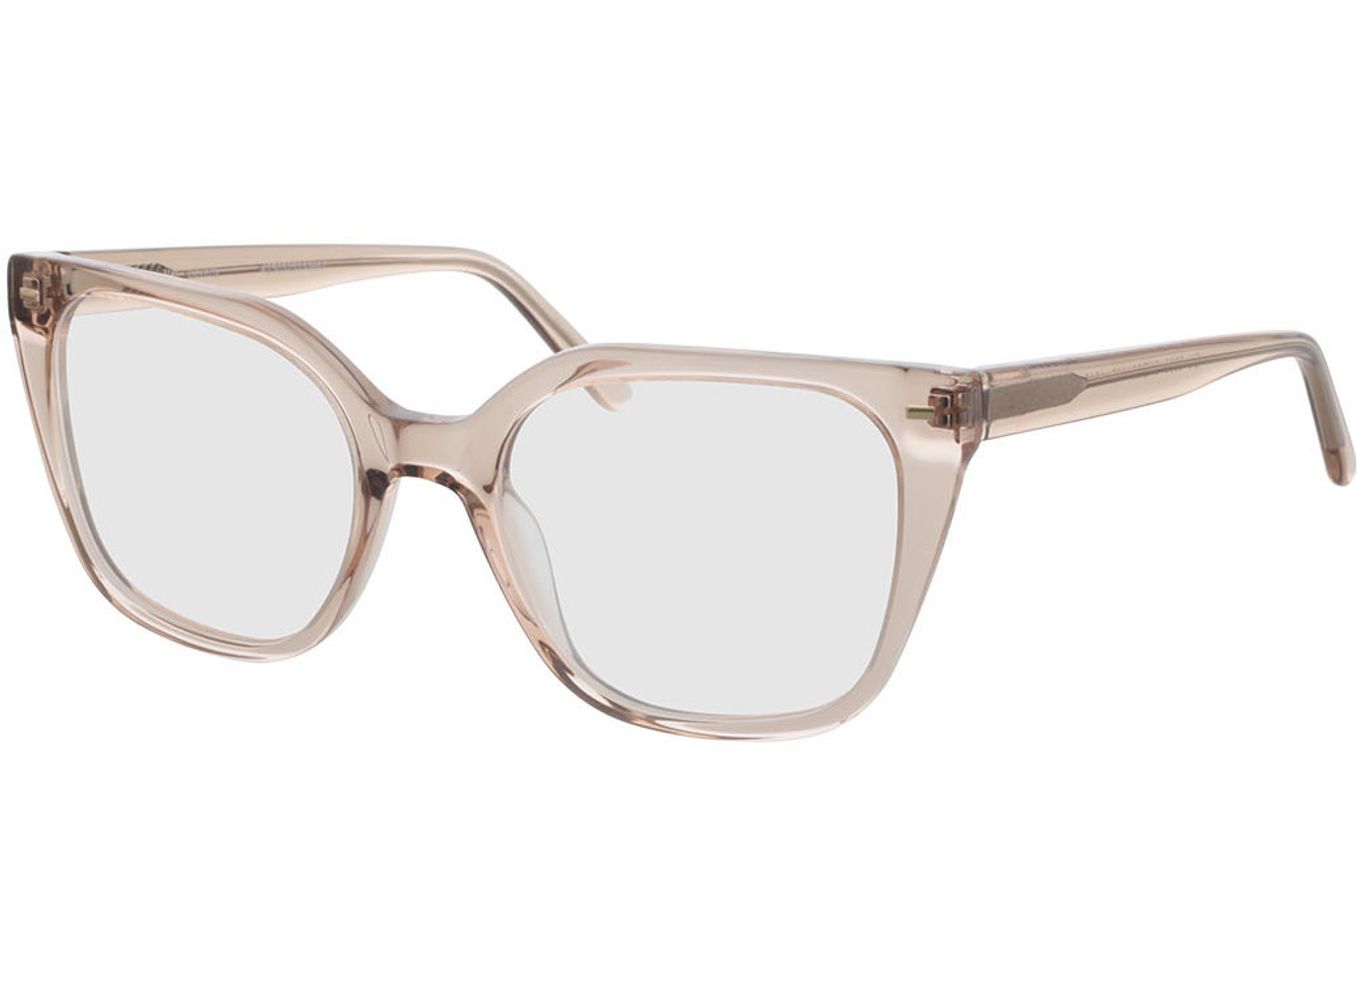 Beverly - beige Gleitsichtbrille, Vollrand, Cateye von Brille24 Collection